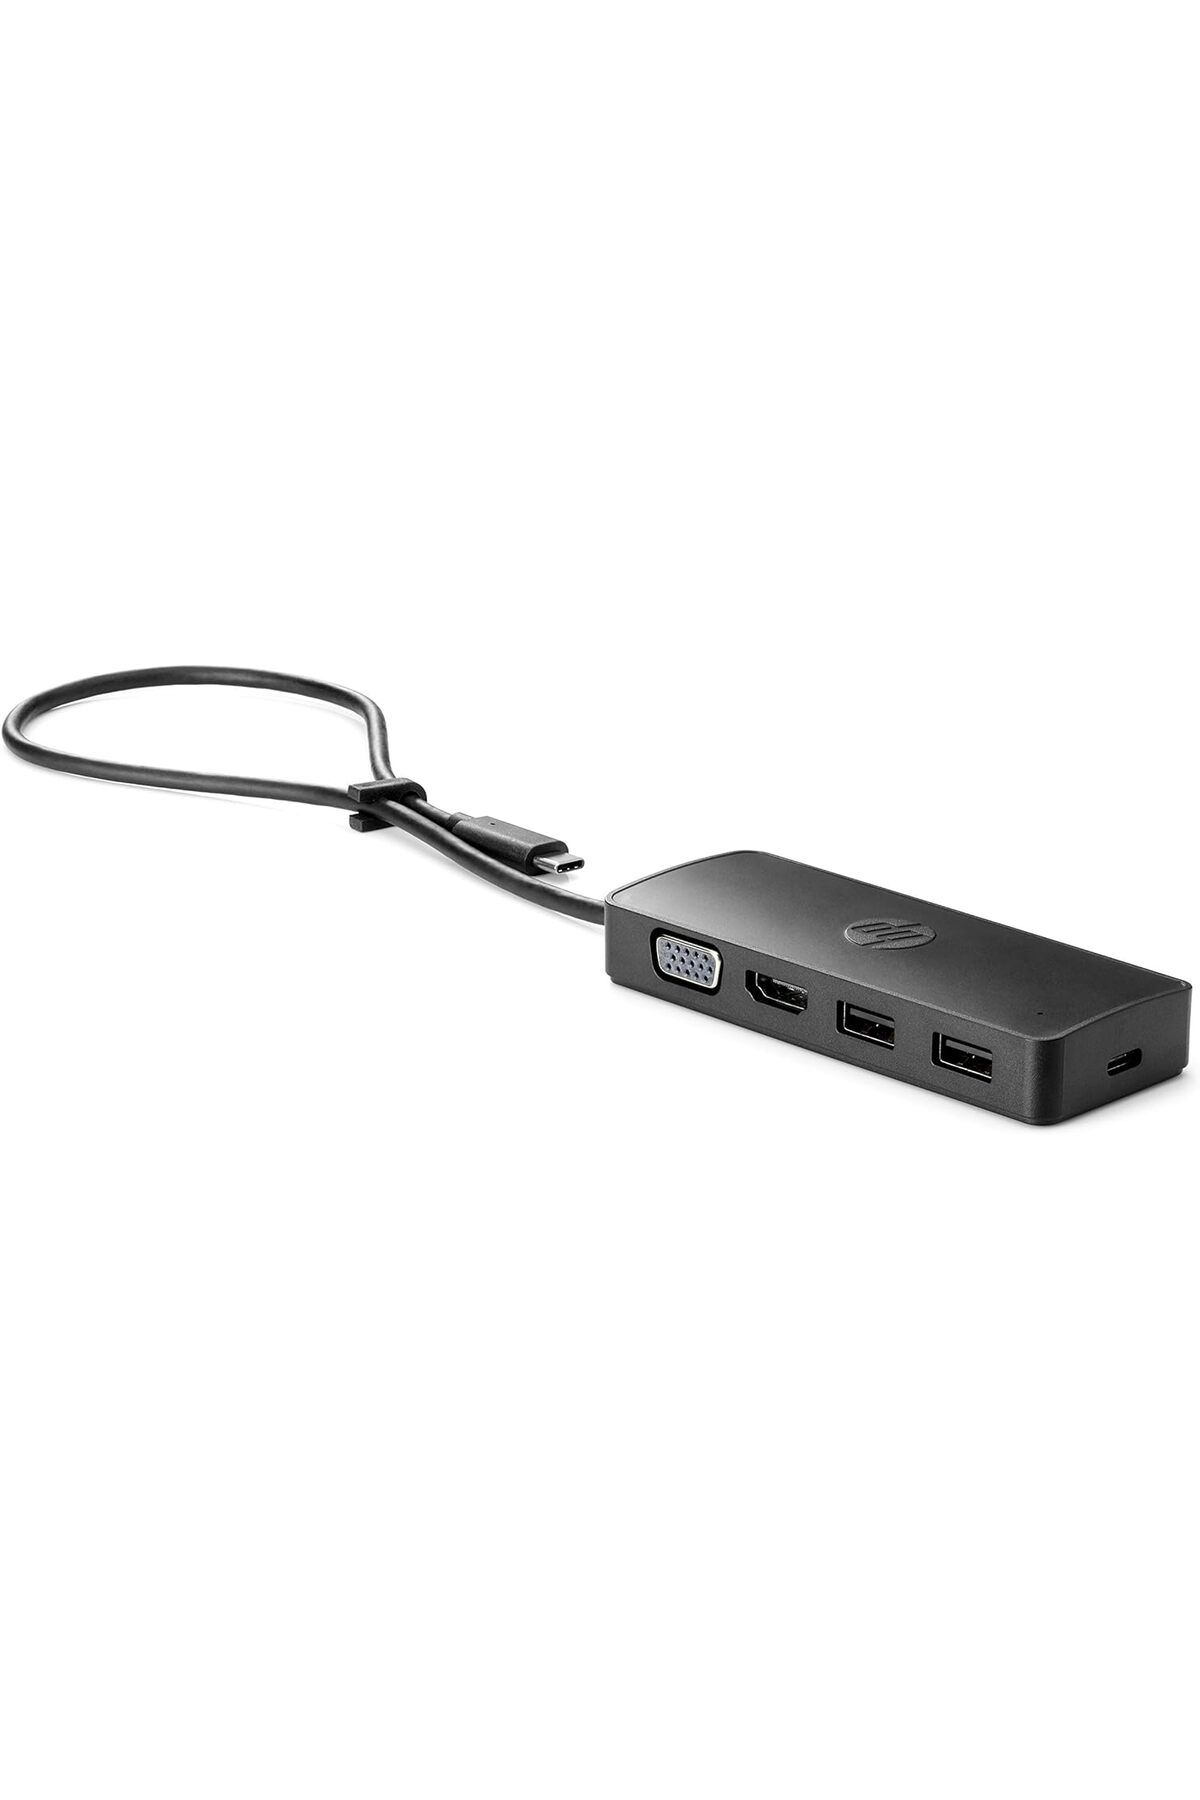 HP 235n8aa Usb-c Seyahat Tüpü G2 (USB HUB, USB C HUB, 4 BAĞLANTI NOKTASI, 2X USB-A, HDMI, VGA) Siyah